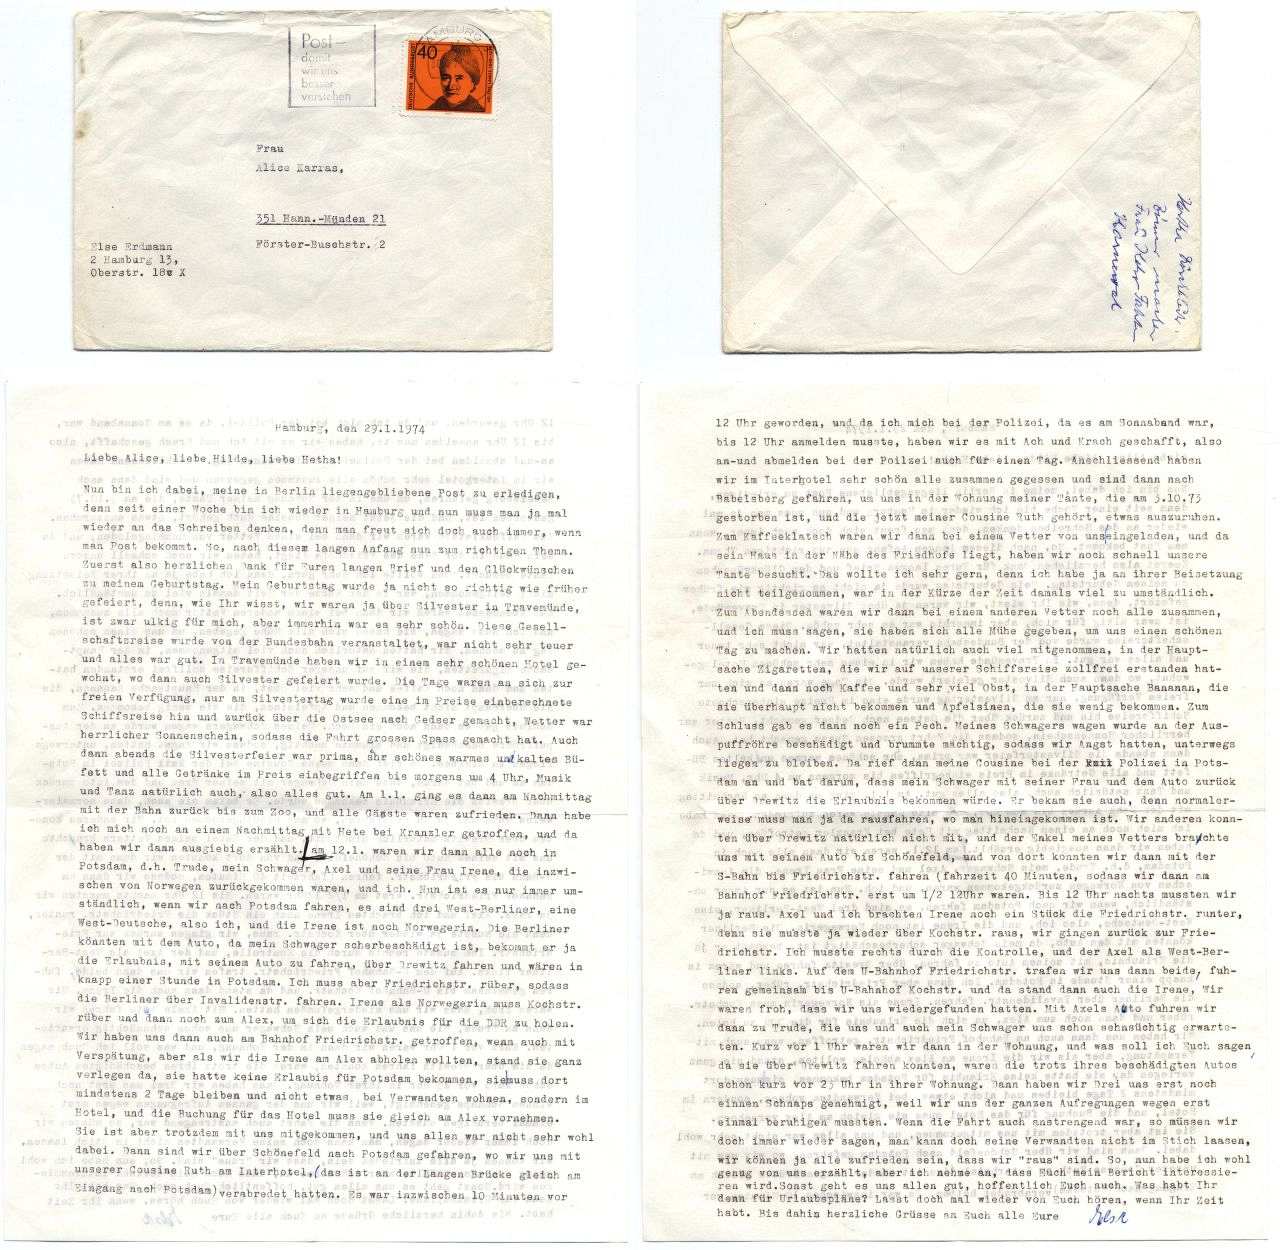 Maschinenschriftlicher Brief: Zeitzeugin Else Erdmann schreibt in einem Brief von 1974 über die Aufregungen beim Grenzübergang bei einem Besuch in Berlin und Potsdam.